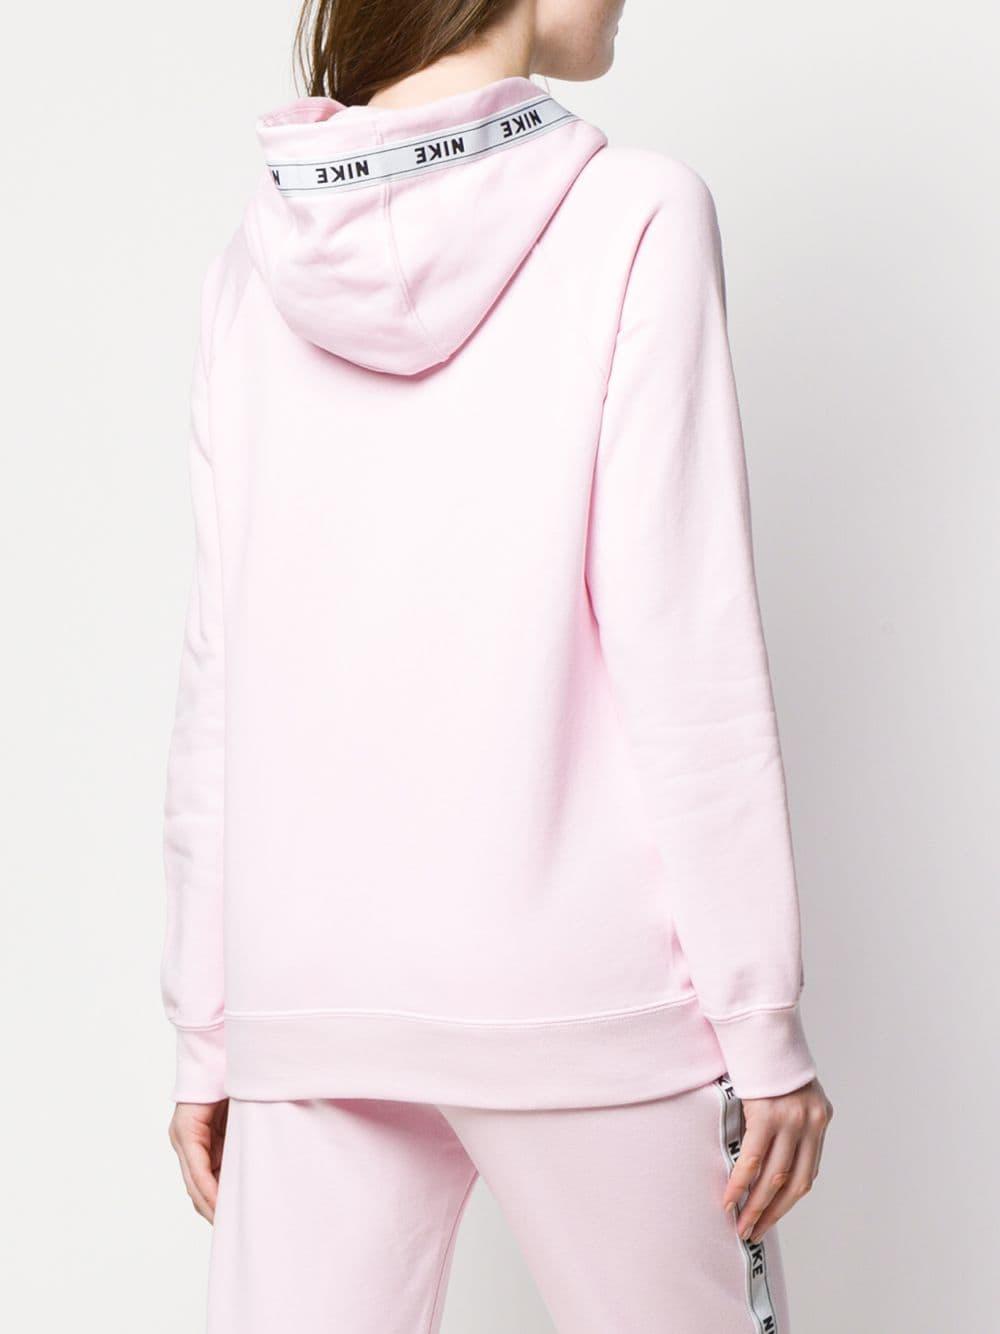 nike pink foam hoodie